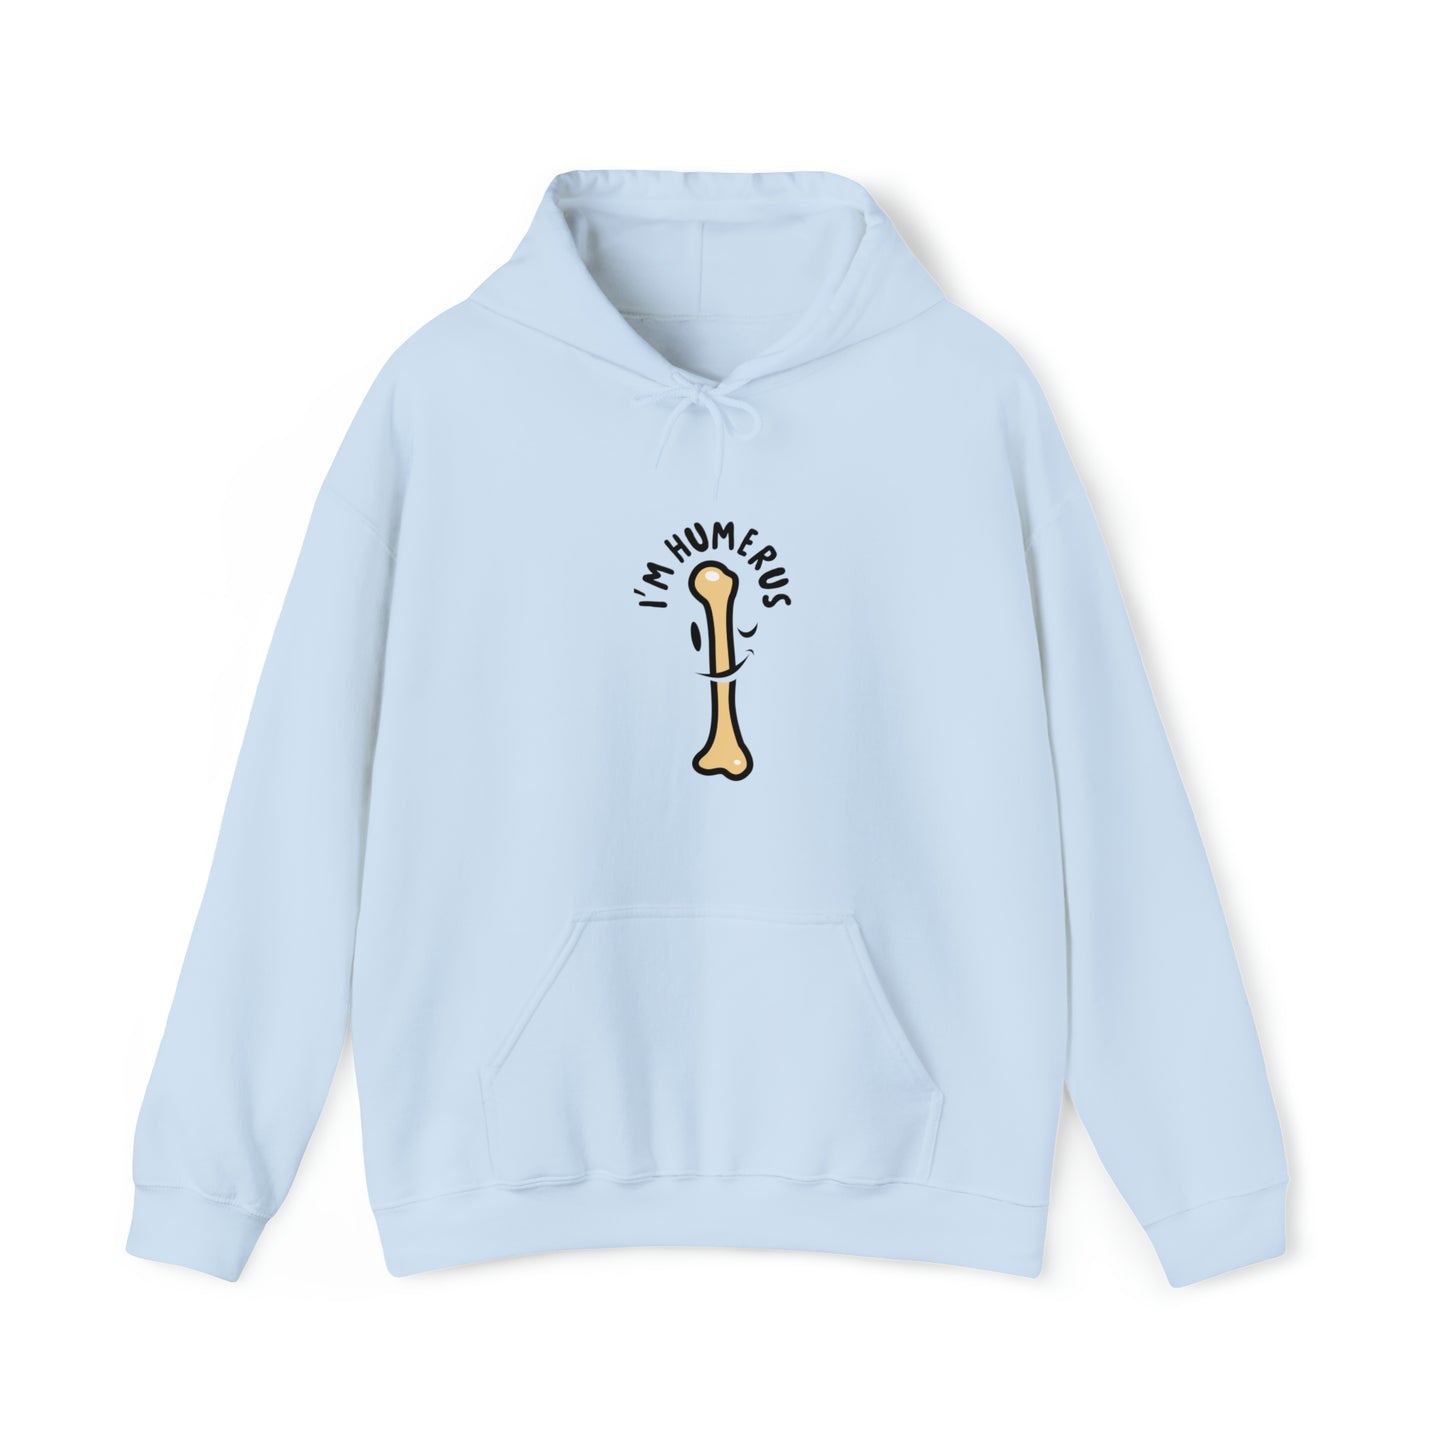 Custom Parody Hooded Sweatshirt, I'm humerus design